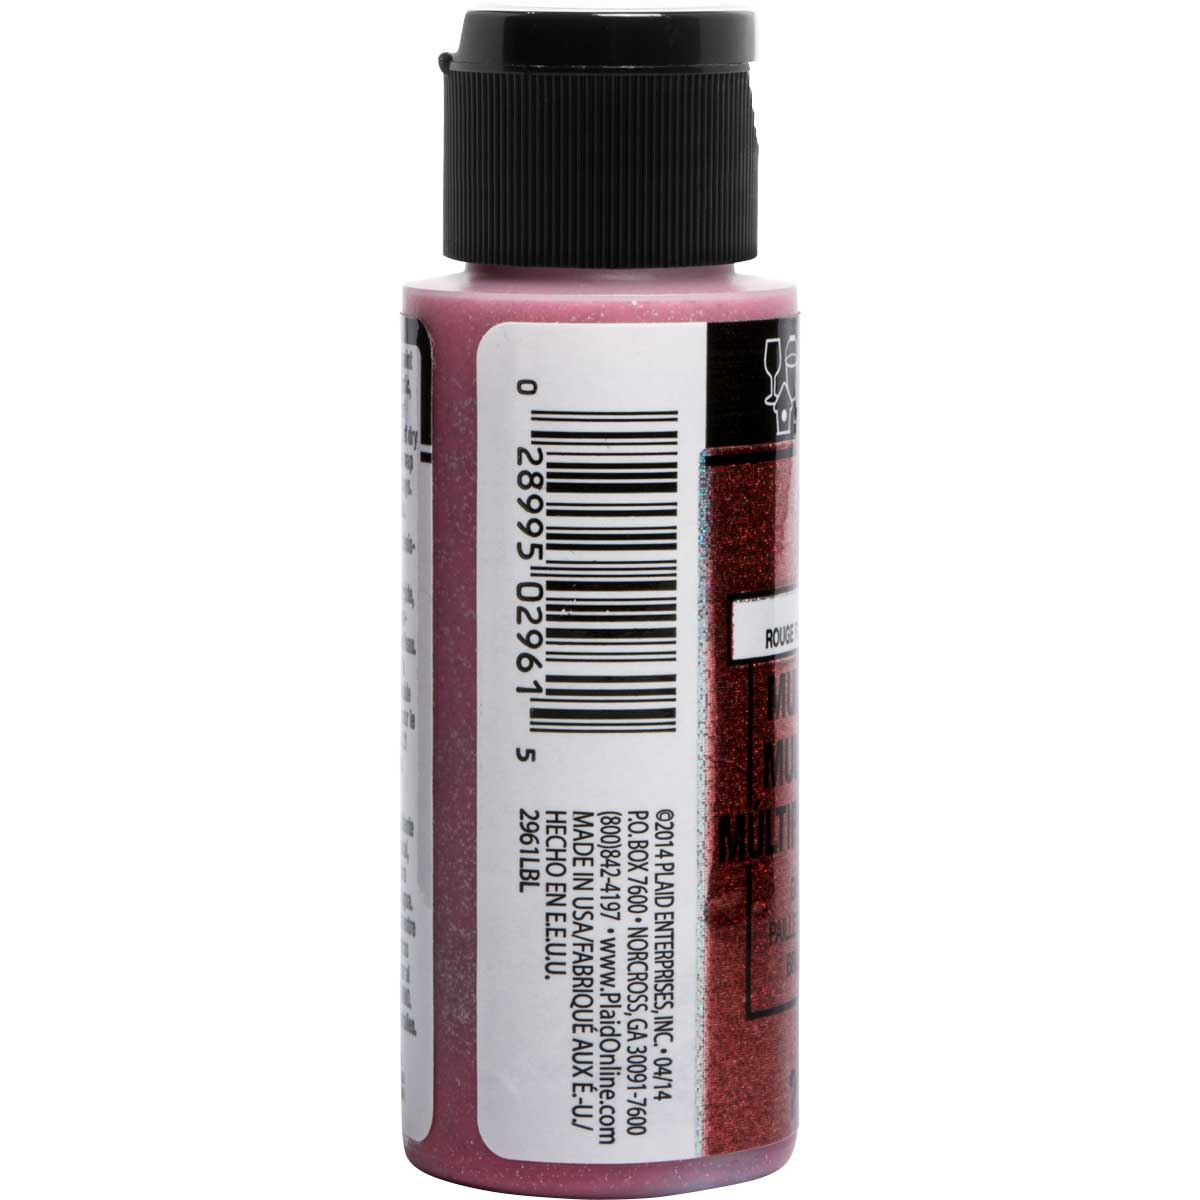 FolkArt ® Multi-Surface Glitter Acrylic Paints - Fiery Red, 2 oz. - 2961